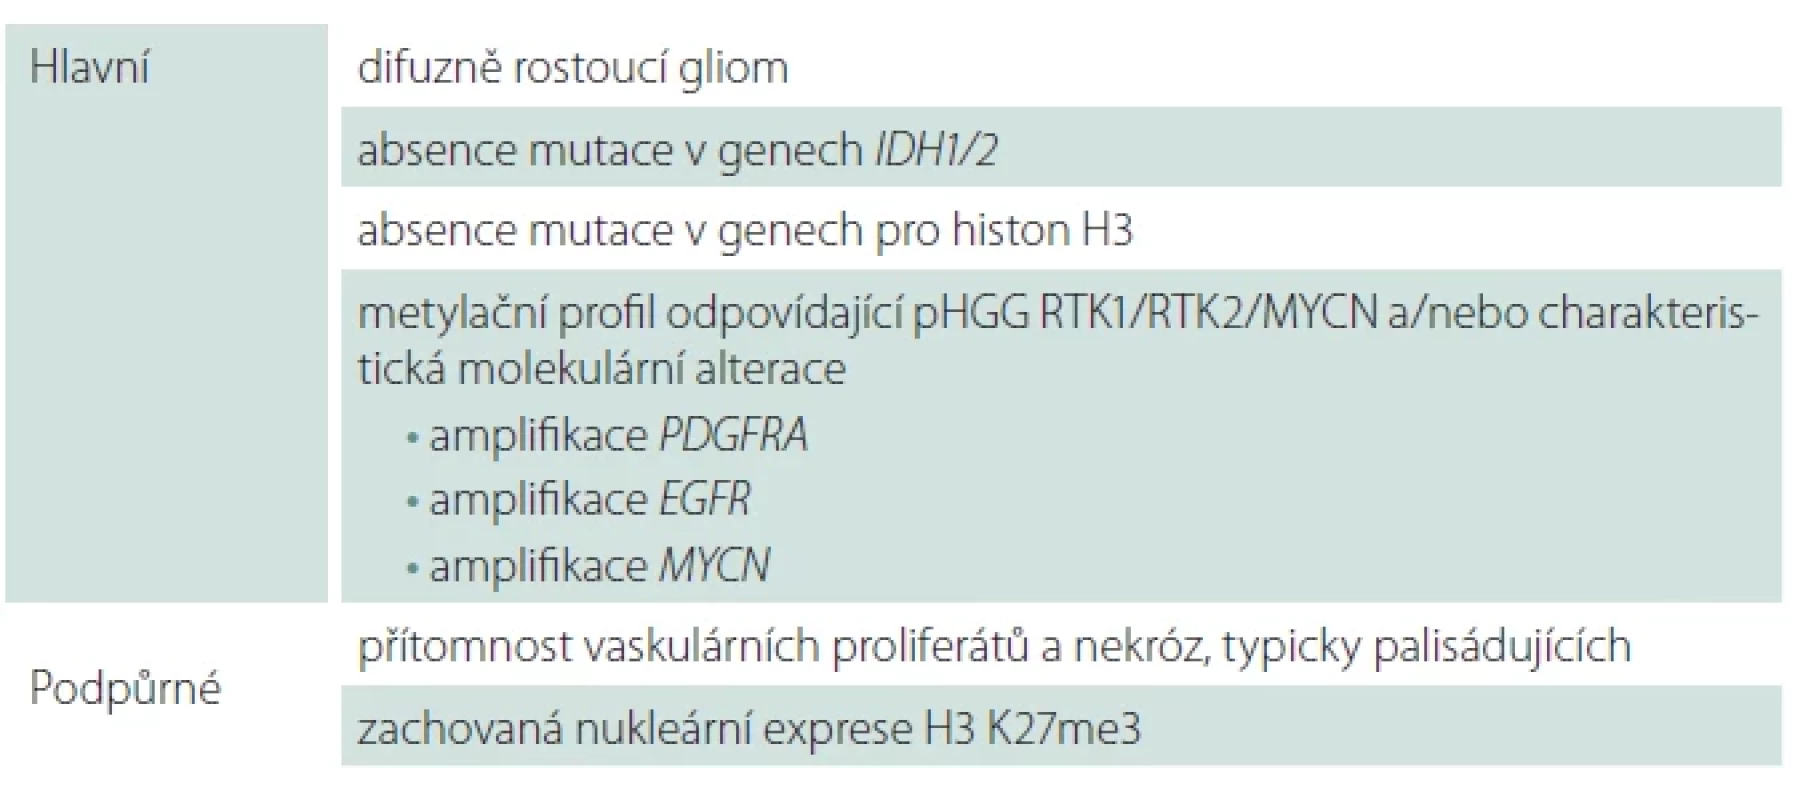 Diagnostická kritéria pro difuzní high-grade gliom dětského typu, H3-wildtype a IDH-wildtype dle WHO 2021.